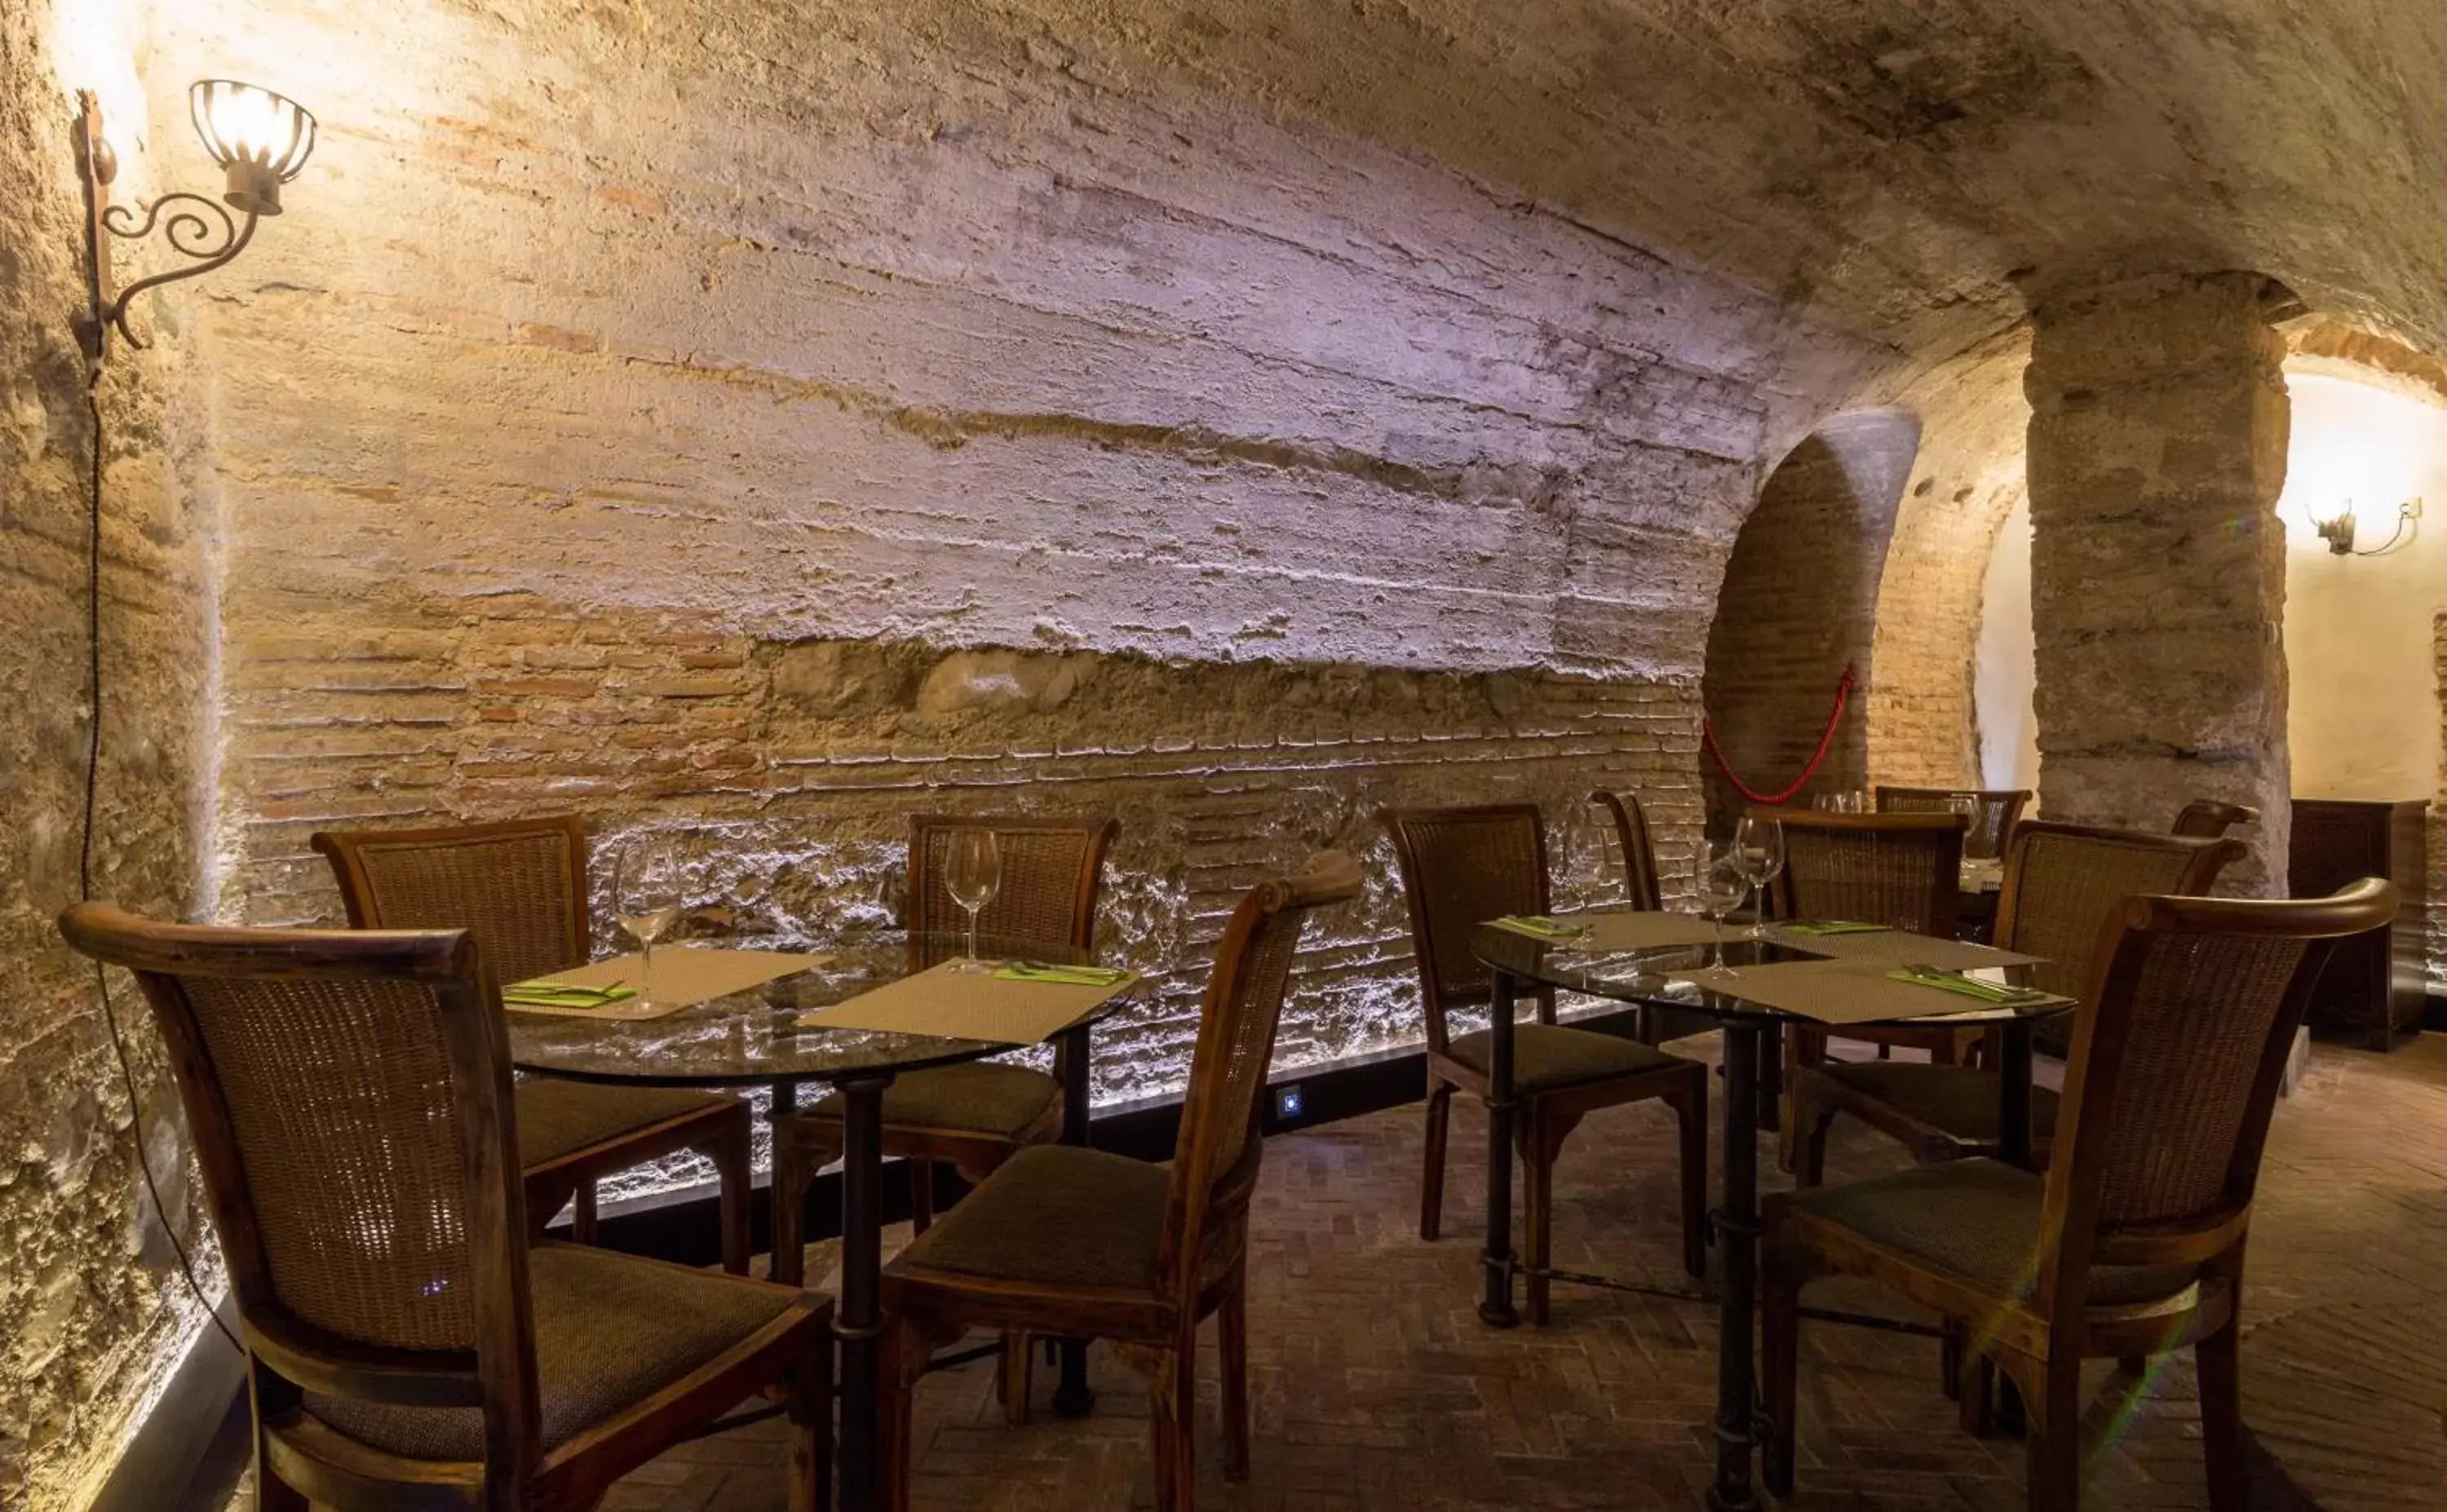 Banquet/Function facilities, Restaurant/Places to Eat in Palacio de Mariana Pineda